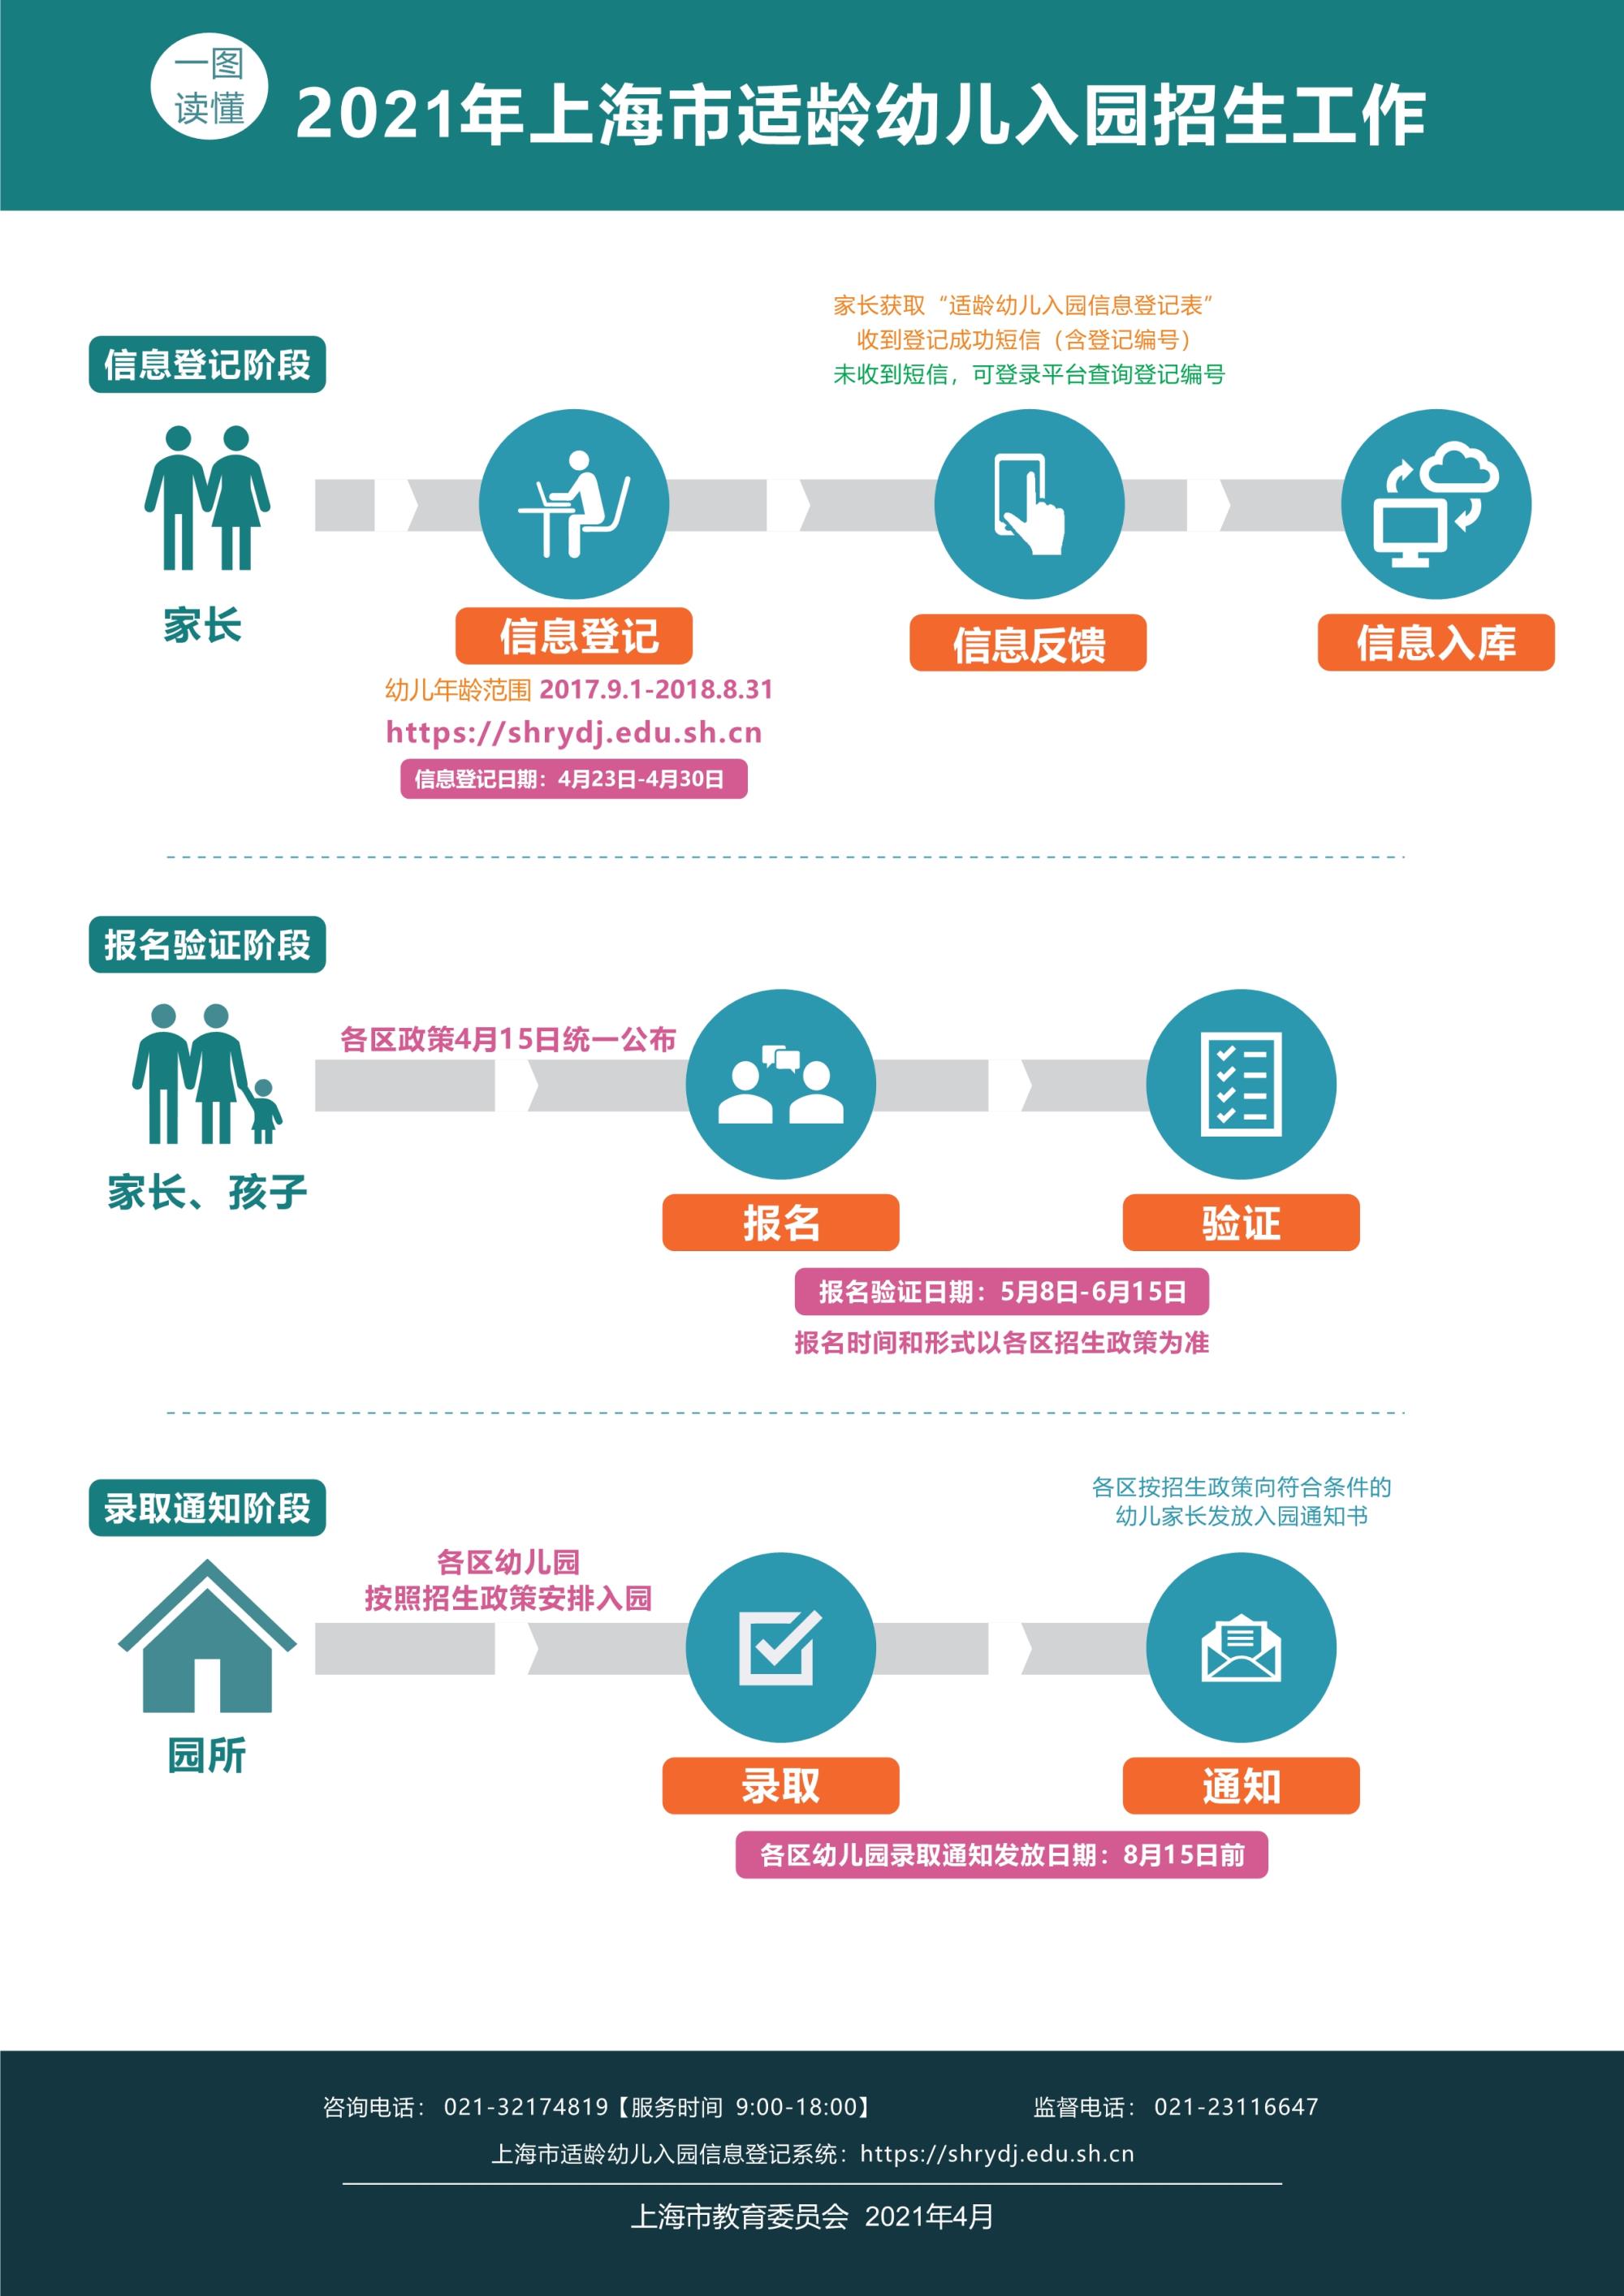 2 一图读懂2021年上海市适龄幼儿入园招生工作.jpg